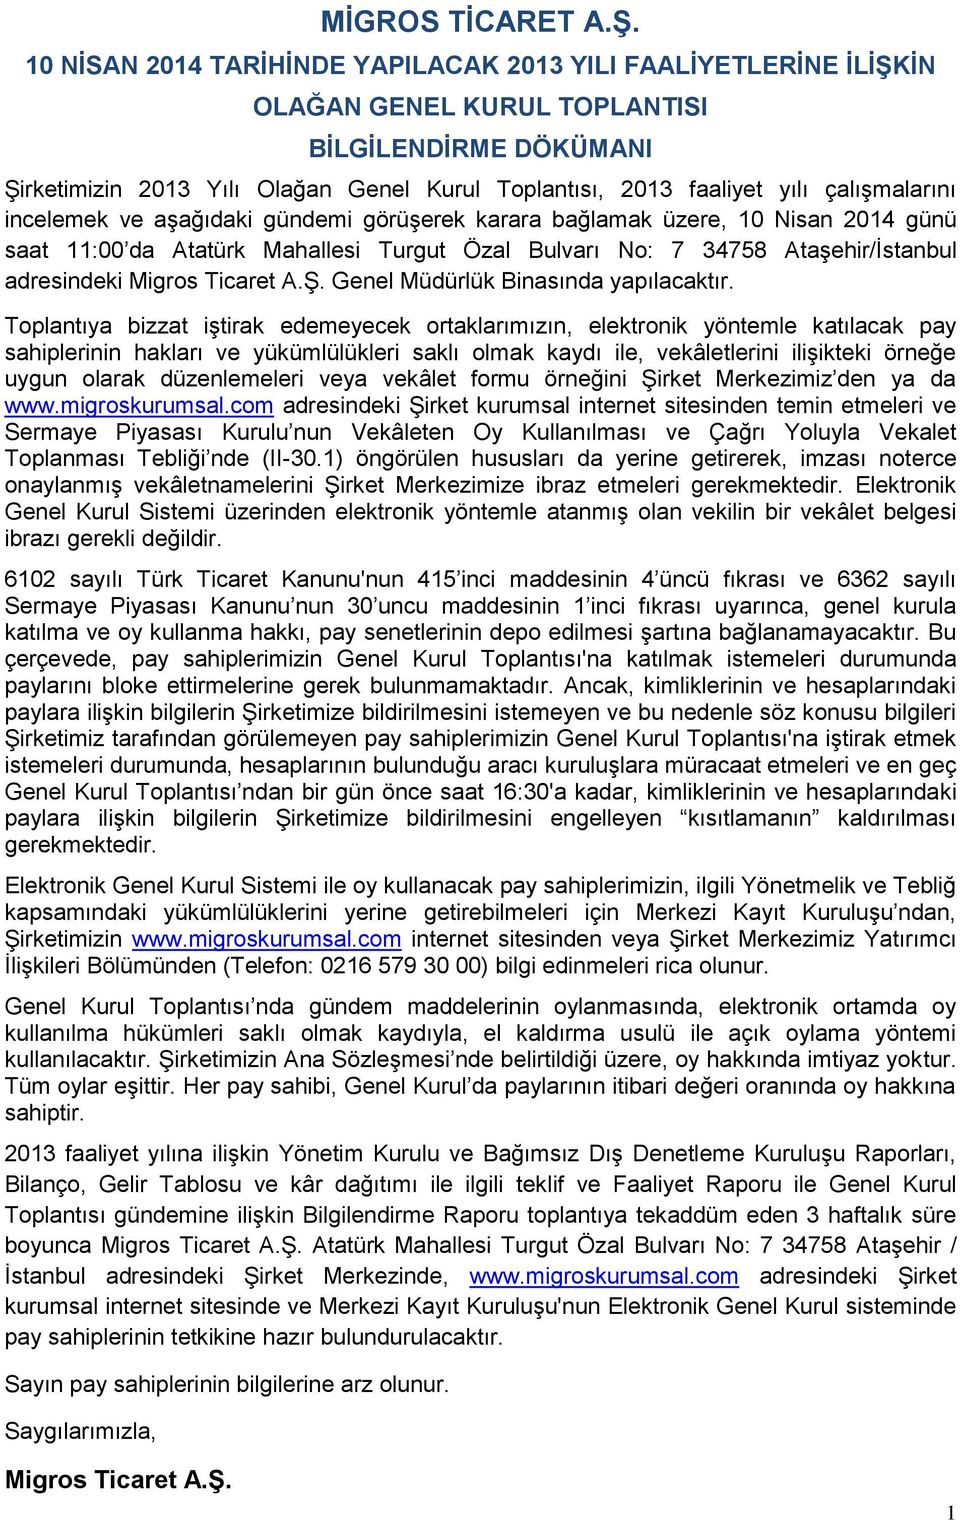 çalışmalarını incelemek ve aşağıdaki gündemi görüşerek karara bağlamak üzere, 10 Nisan 2014 günü saat 11:00 da Atatürk Mahallesi Turgut Özal Bulvarı No: 7 34758 Ataşehir/İstanbul adresindeki Migros